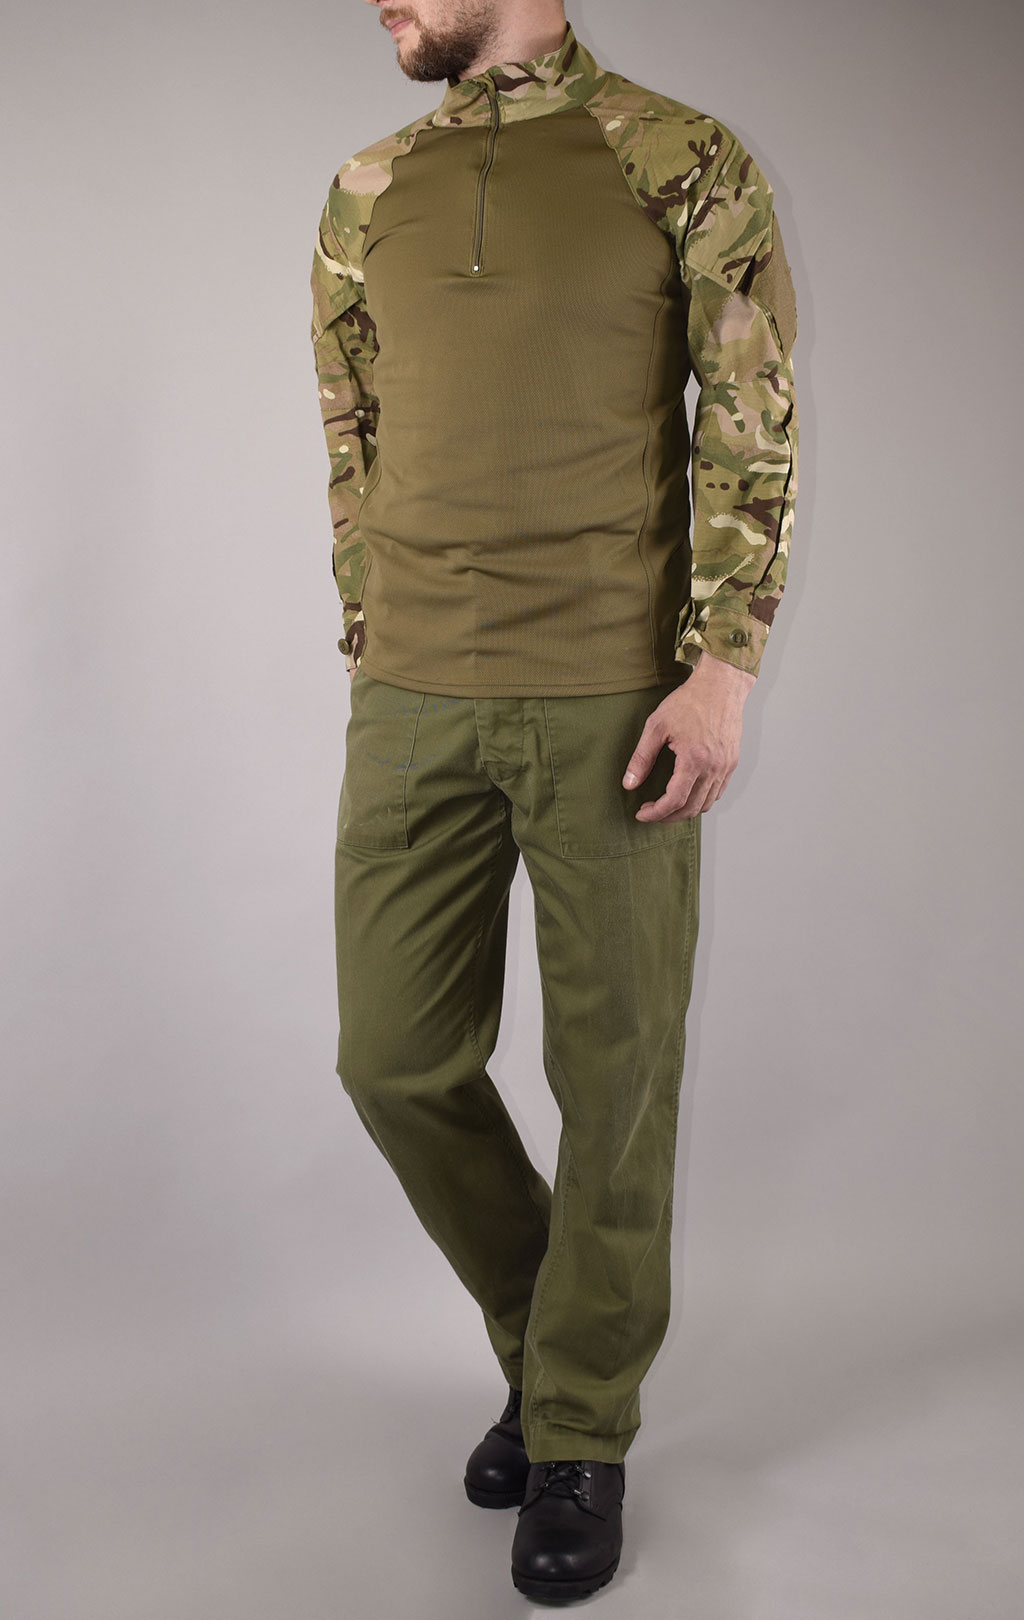 Рубашка Combat Shirt облегчённая mtp/olive б/у Англия